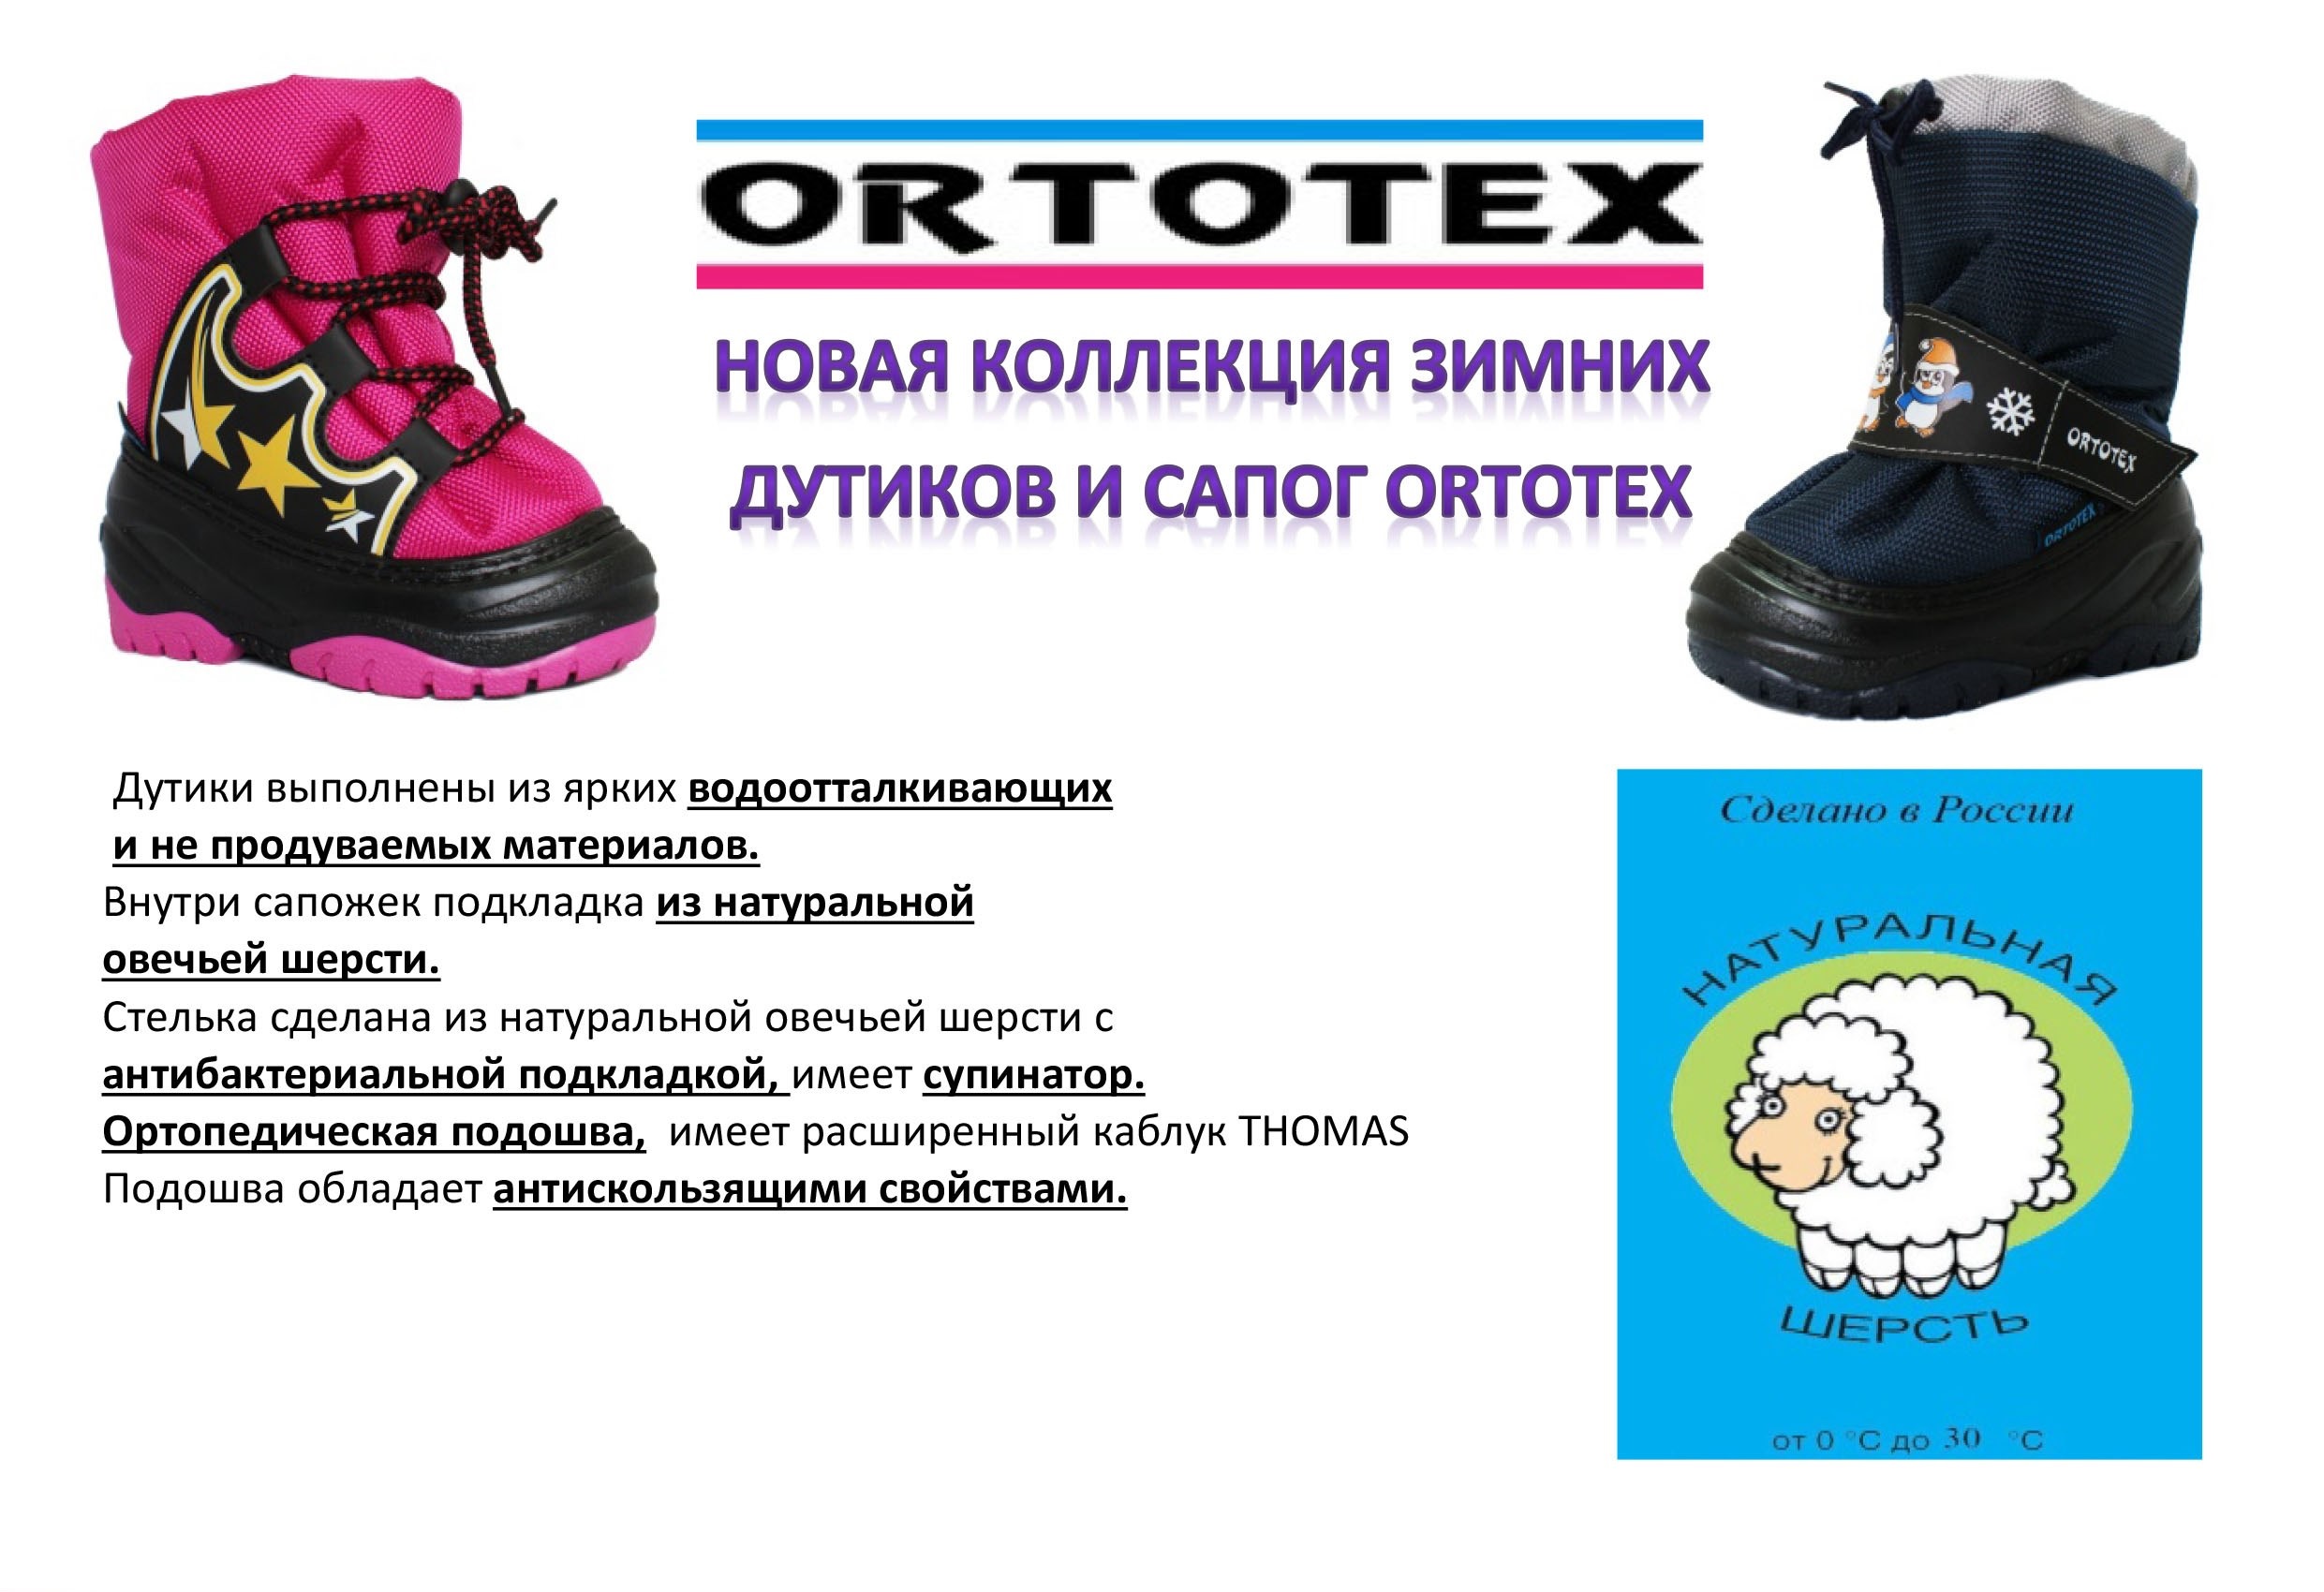 Зимние ботинки Ortotex. Дутики детские резиновая подошва. Зимняя обувь сказка с ортопедической подошвой. Реклама о ботинках Дутики. Дутики подошва